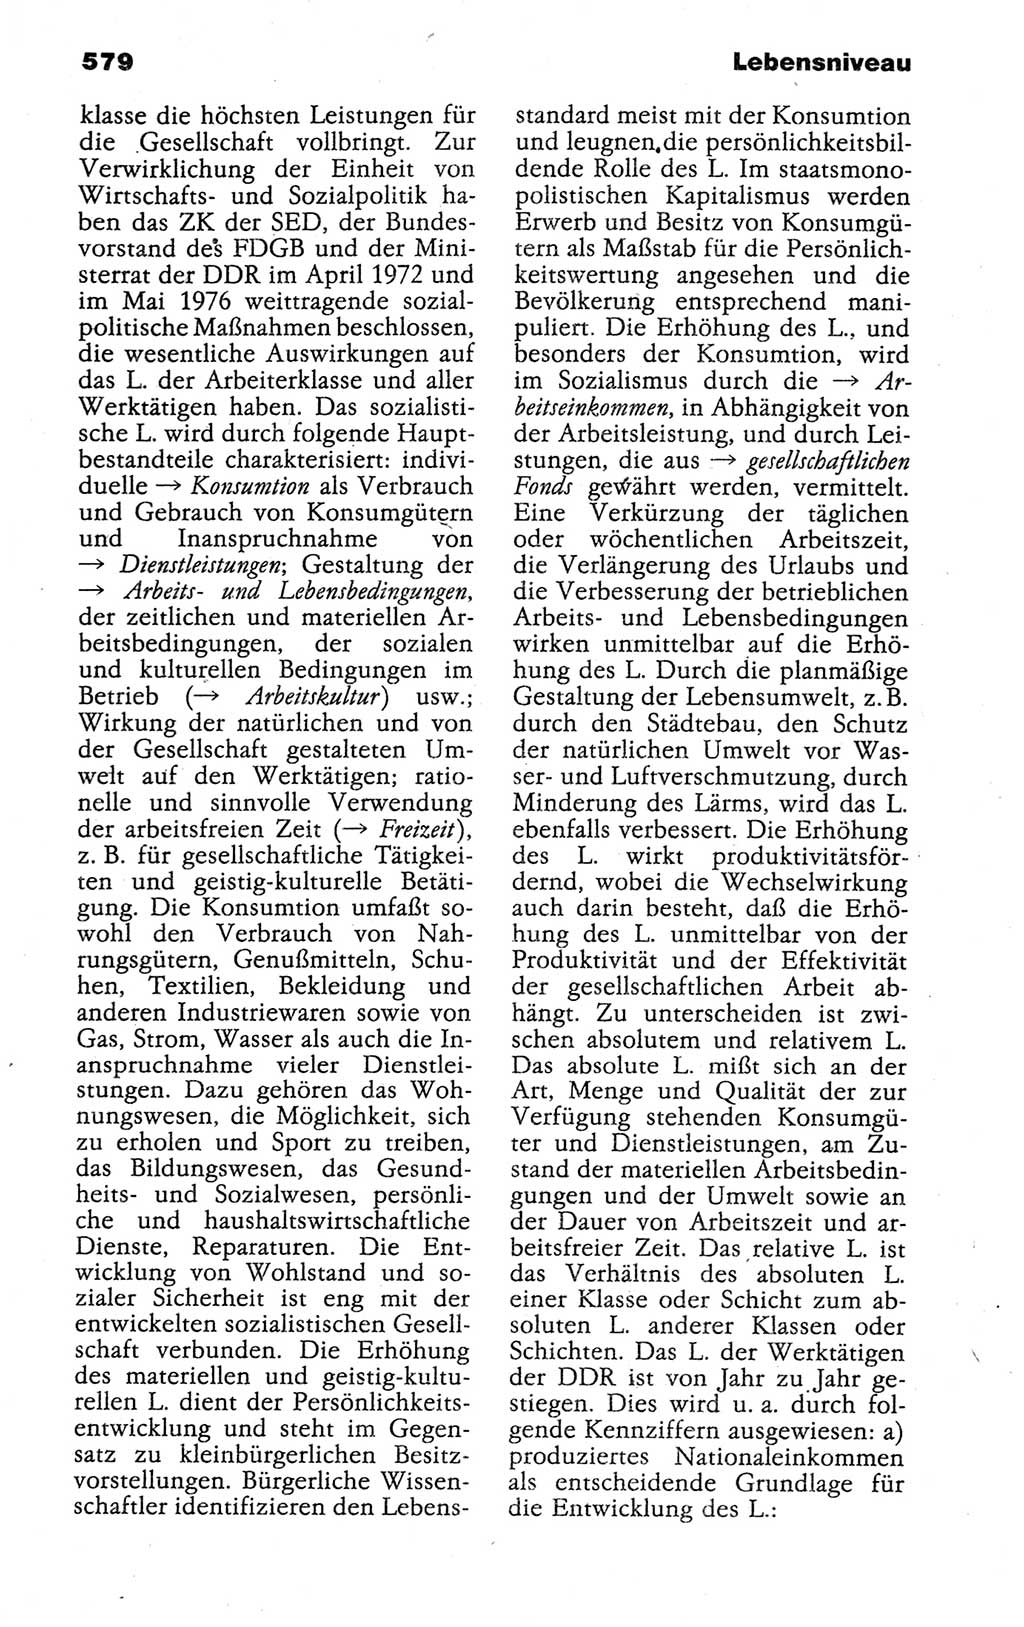 Kleines politisches Wörterbuch [Deutsche Demokratische Republik (DDR)] 1988, Seite 579 (Kl. pol. Wb. DDR 1988, S. 579)